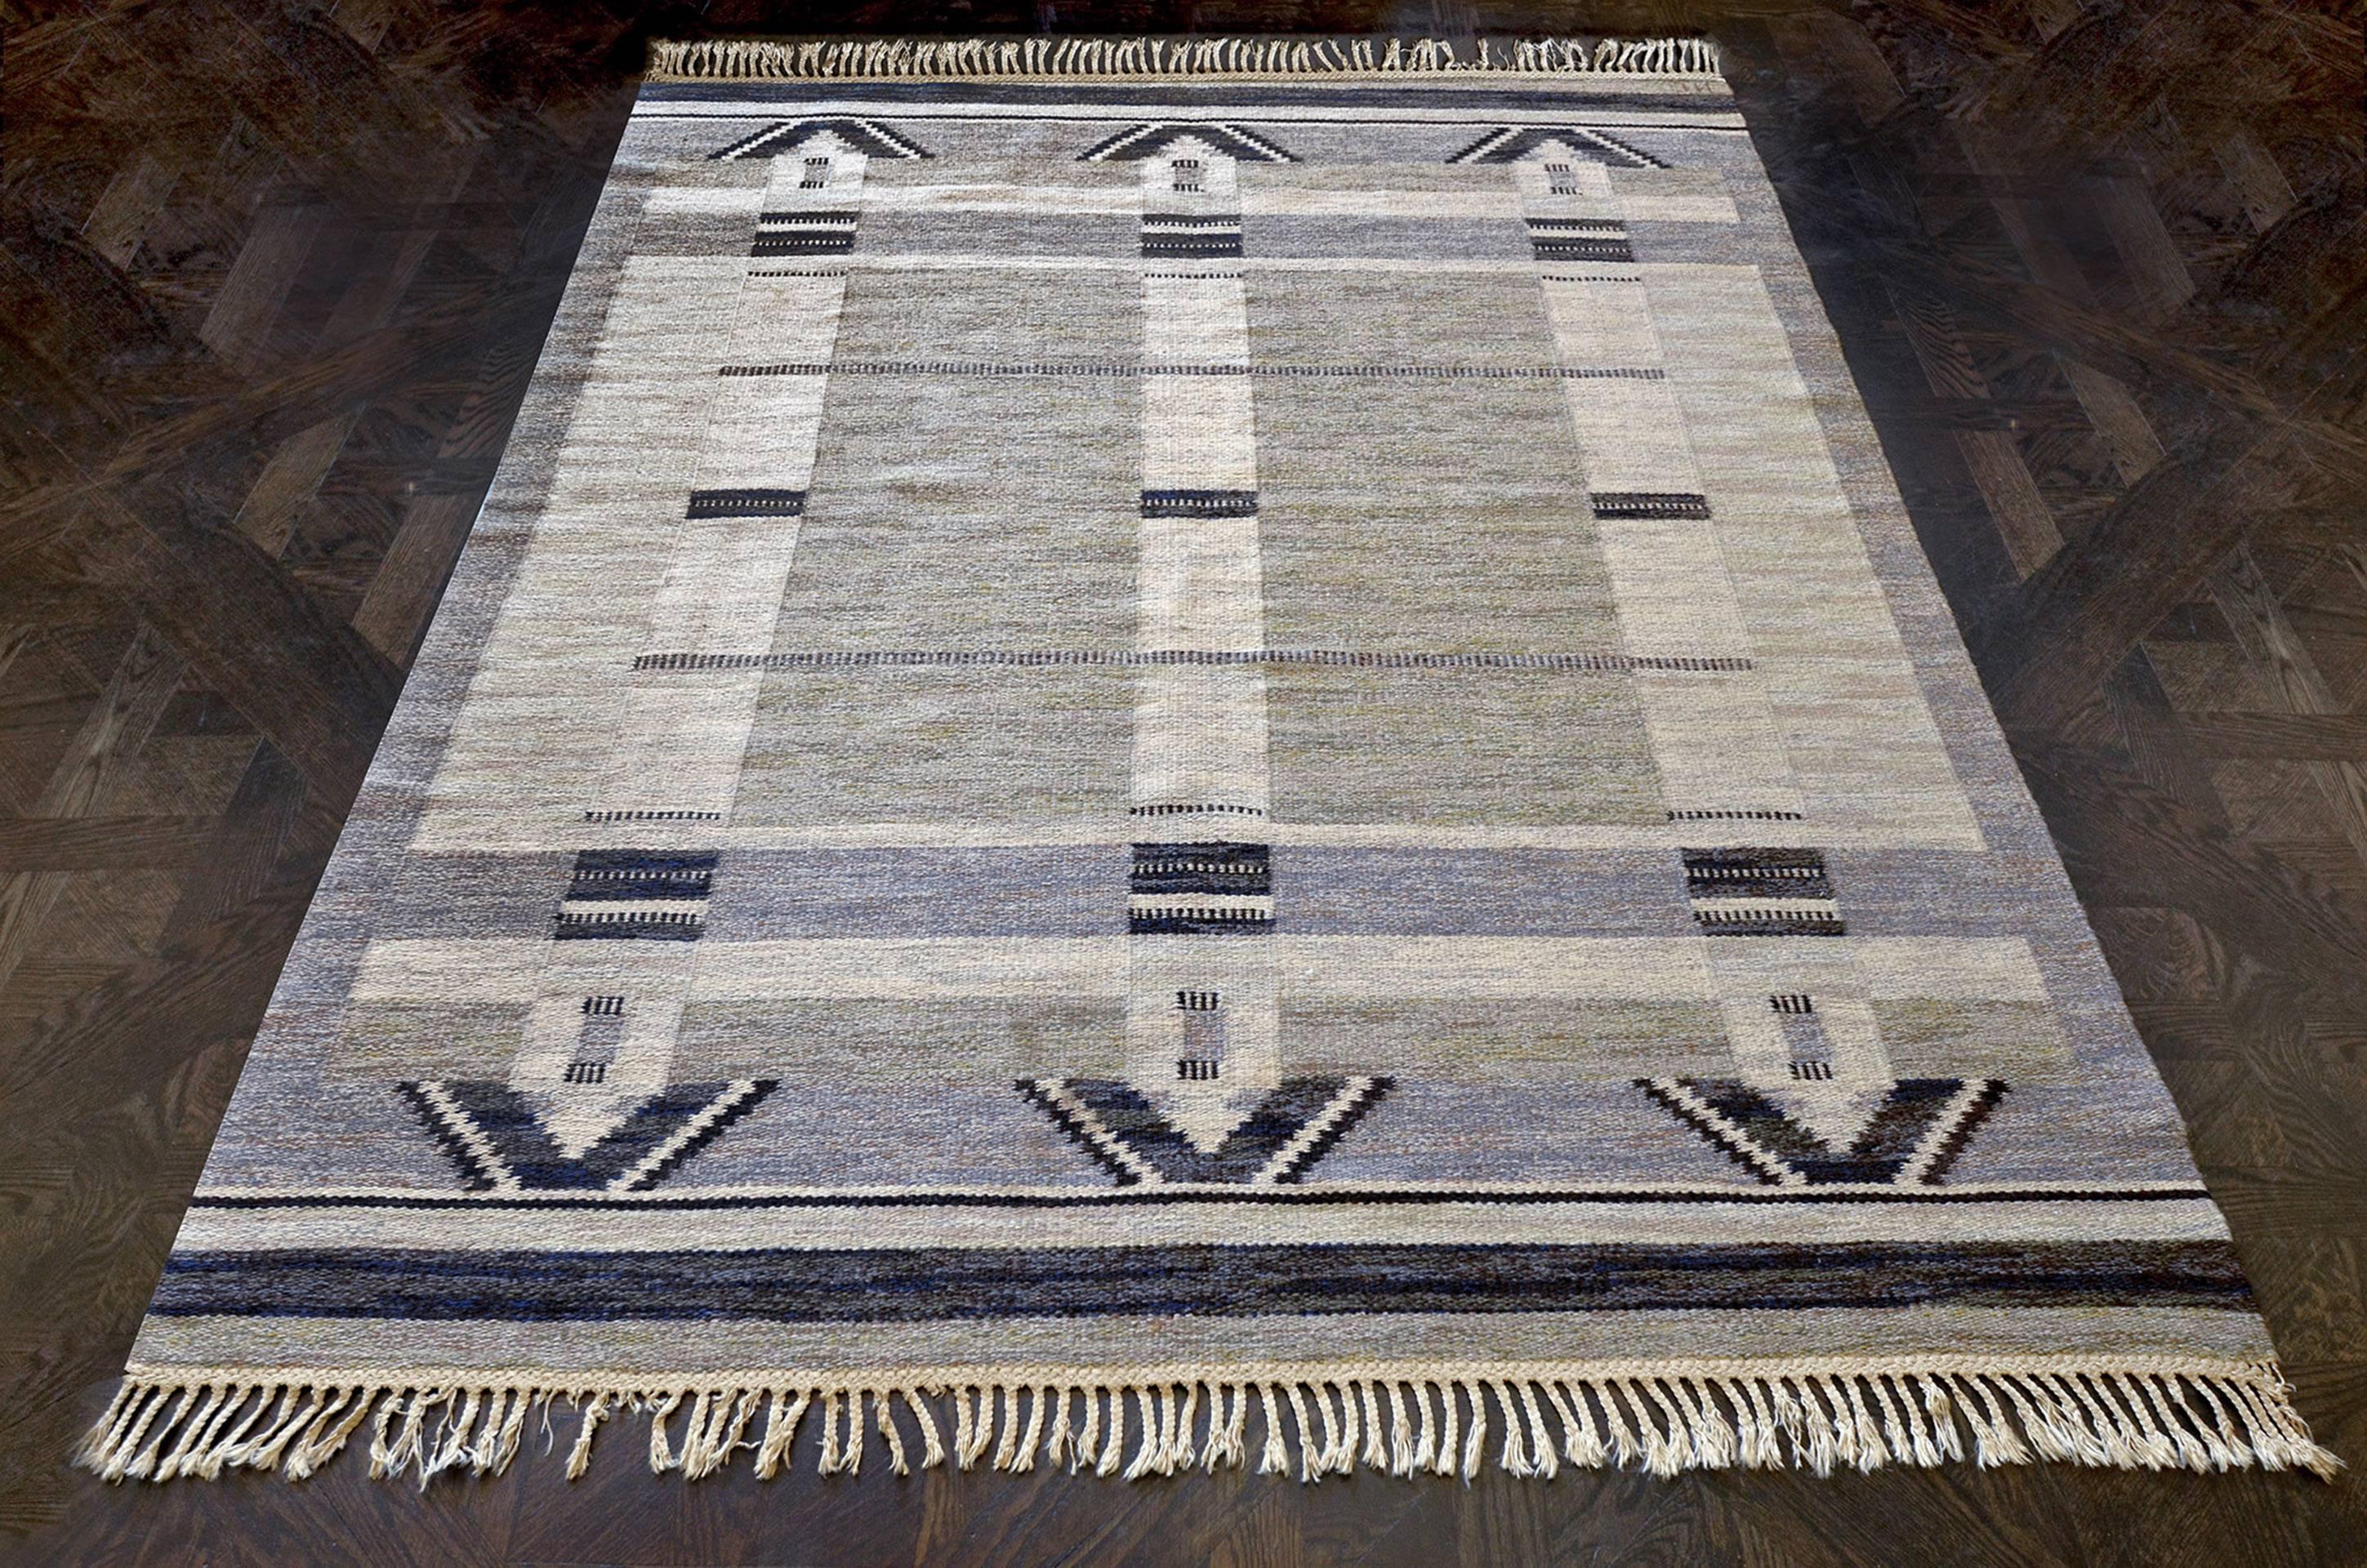 Ce tapis suédois vintage tissé à la main présente un champ gris sable interrompu par trois bandes ivoire avec des demi-lozanges en escalier anthracite à chaque extrémité, couronnées par des bandes anthracite et ivoire à chaque extrémité. Signé par